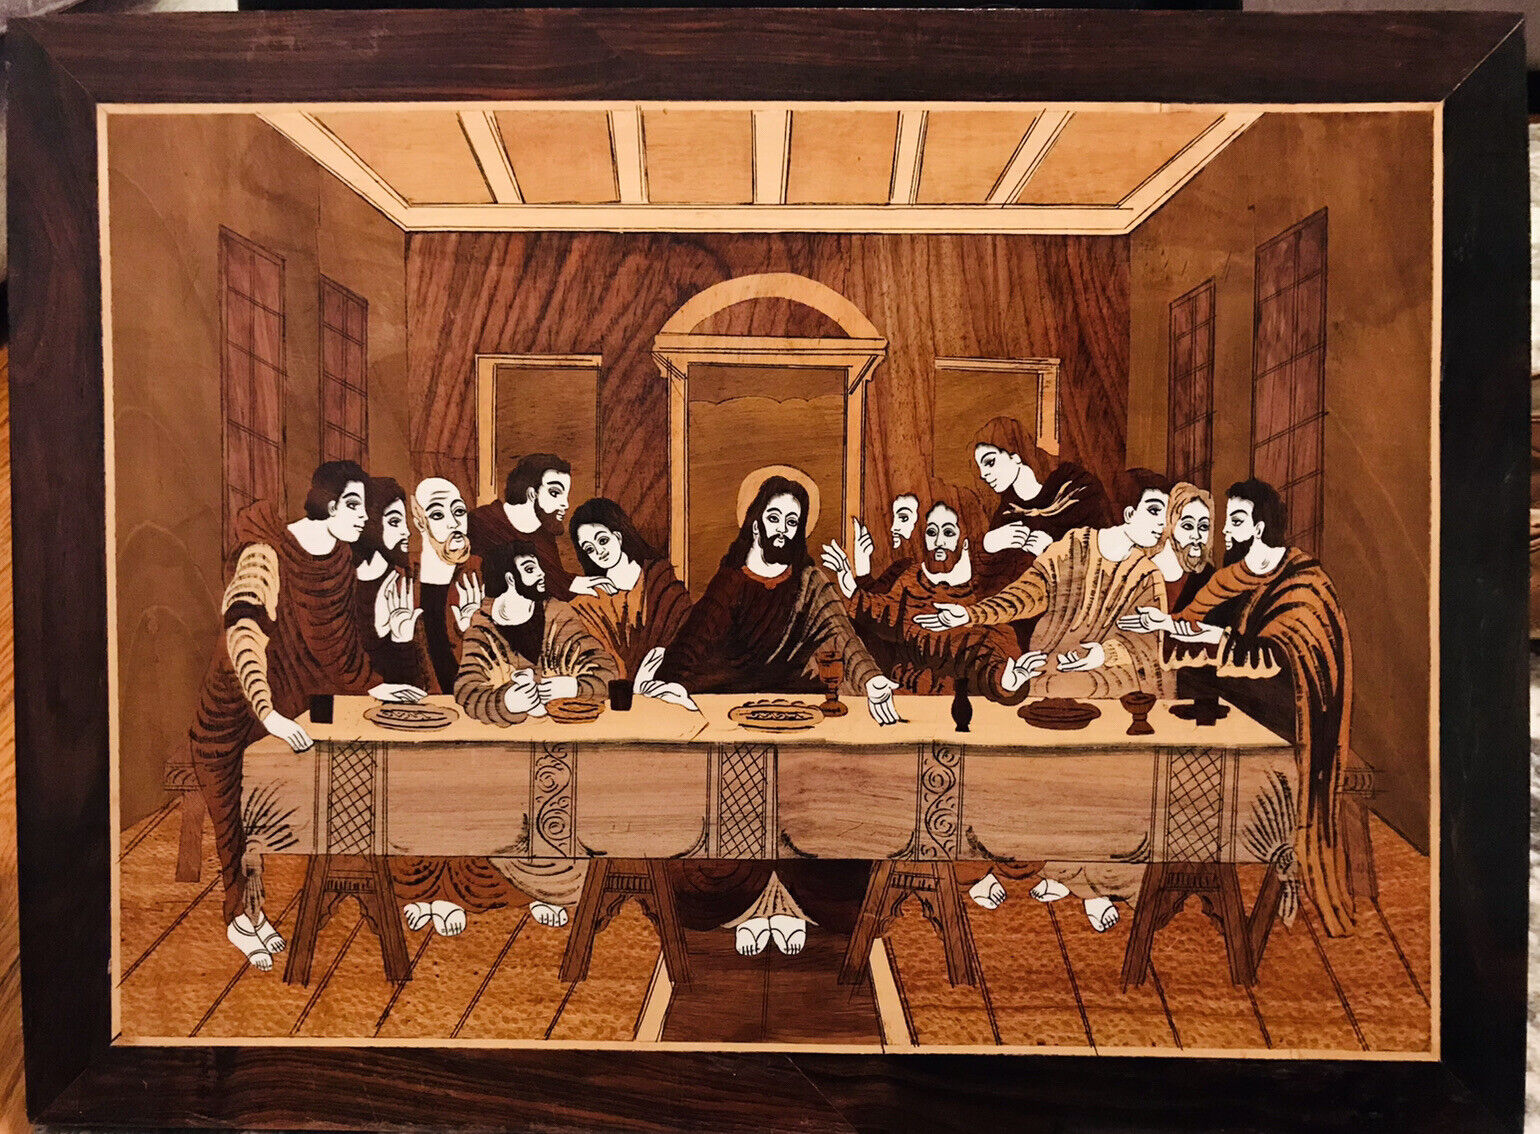 Vintage Unique Wood Art of The Last Supper. 22x30”